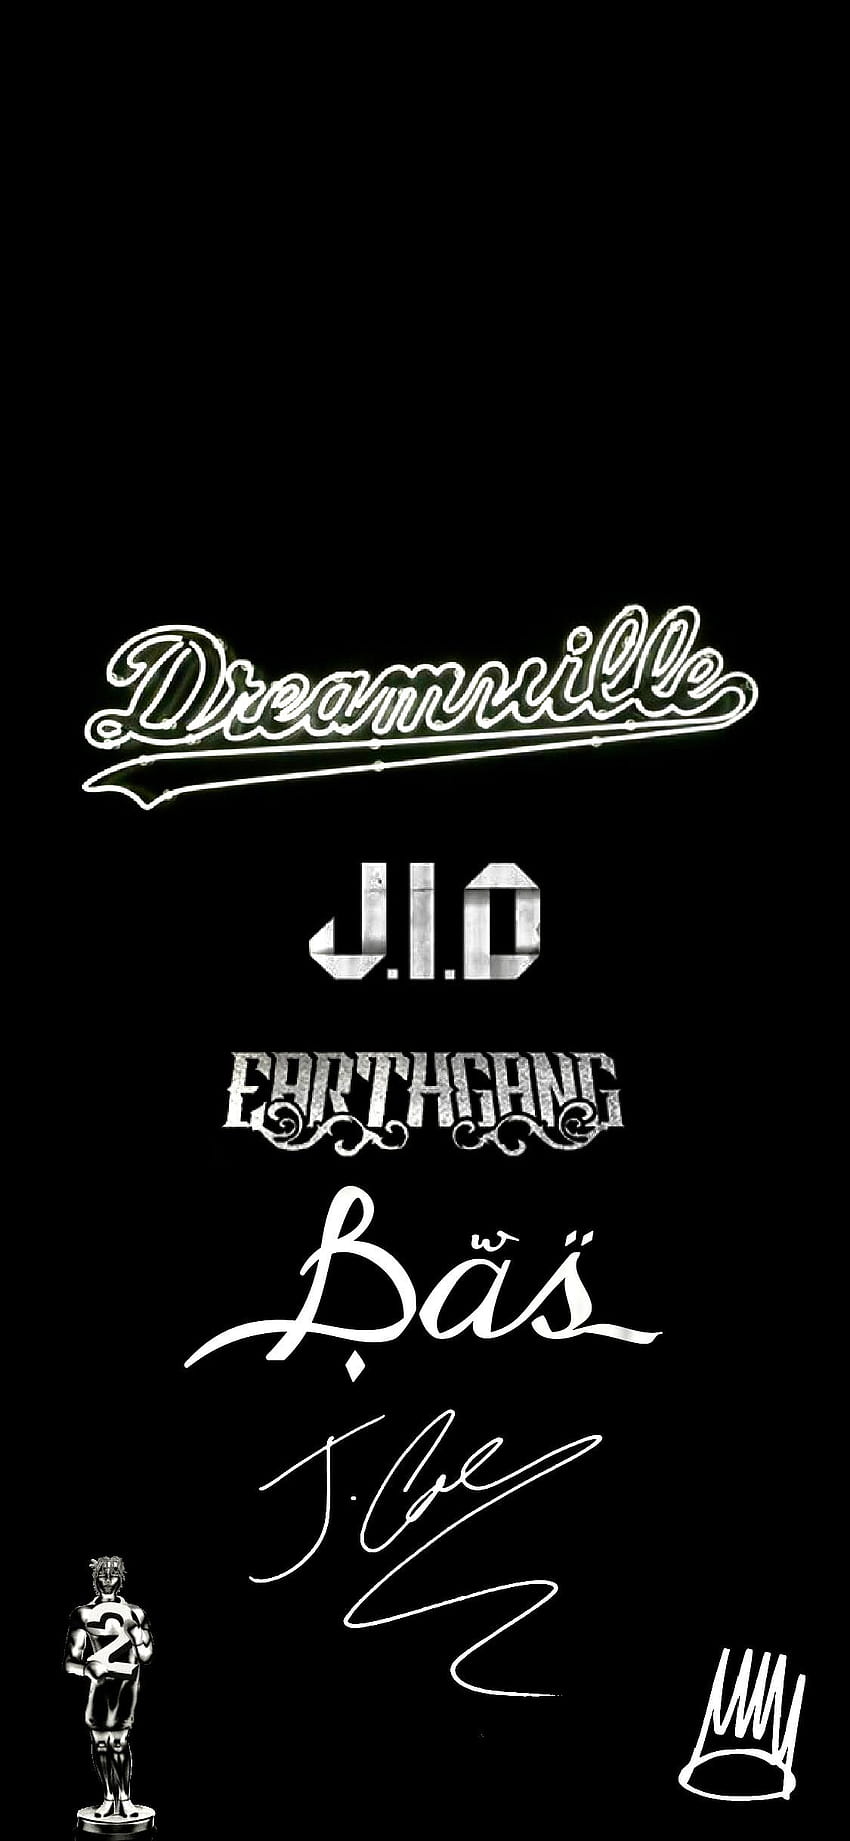 CORREGIDO] Dreamville, J. Cole, Bas, JID y EARTHGANG. : dreamvillerecords, j cole iphone 11 fondo de pantalla del teléfono